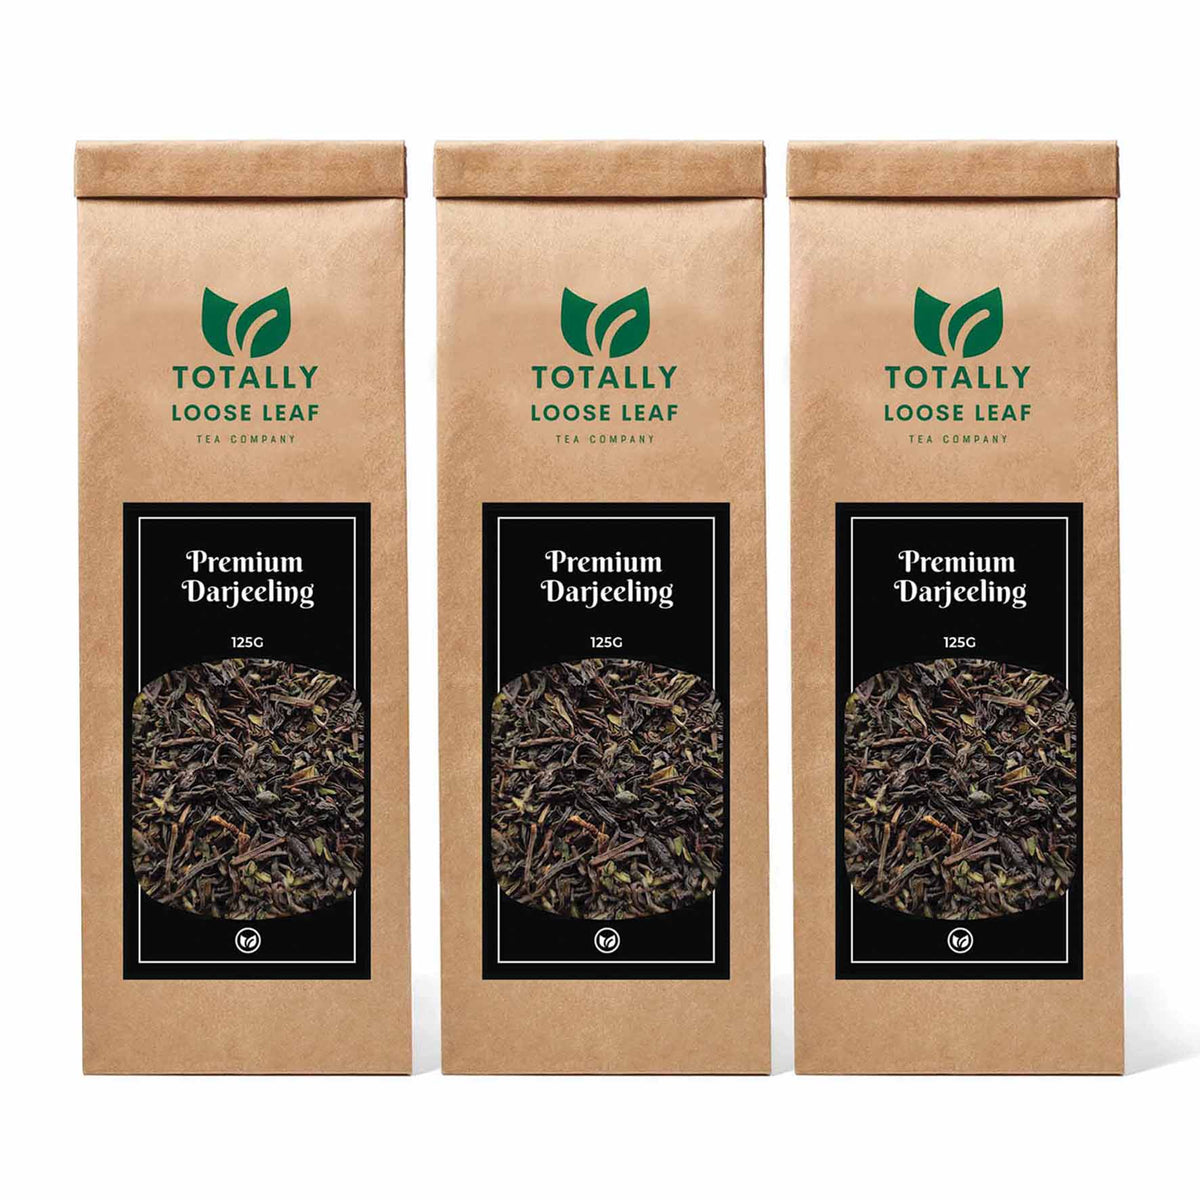 Premium Darjeeling Black Estate Loose Leaf Tea - three pouches